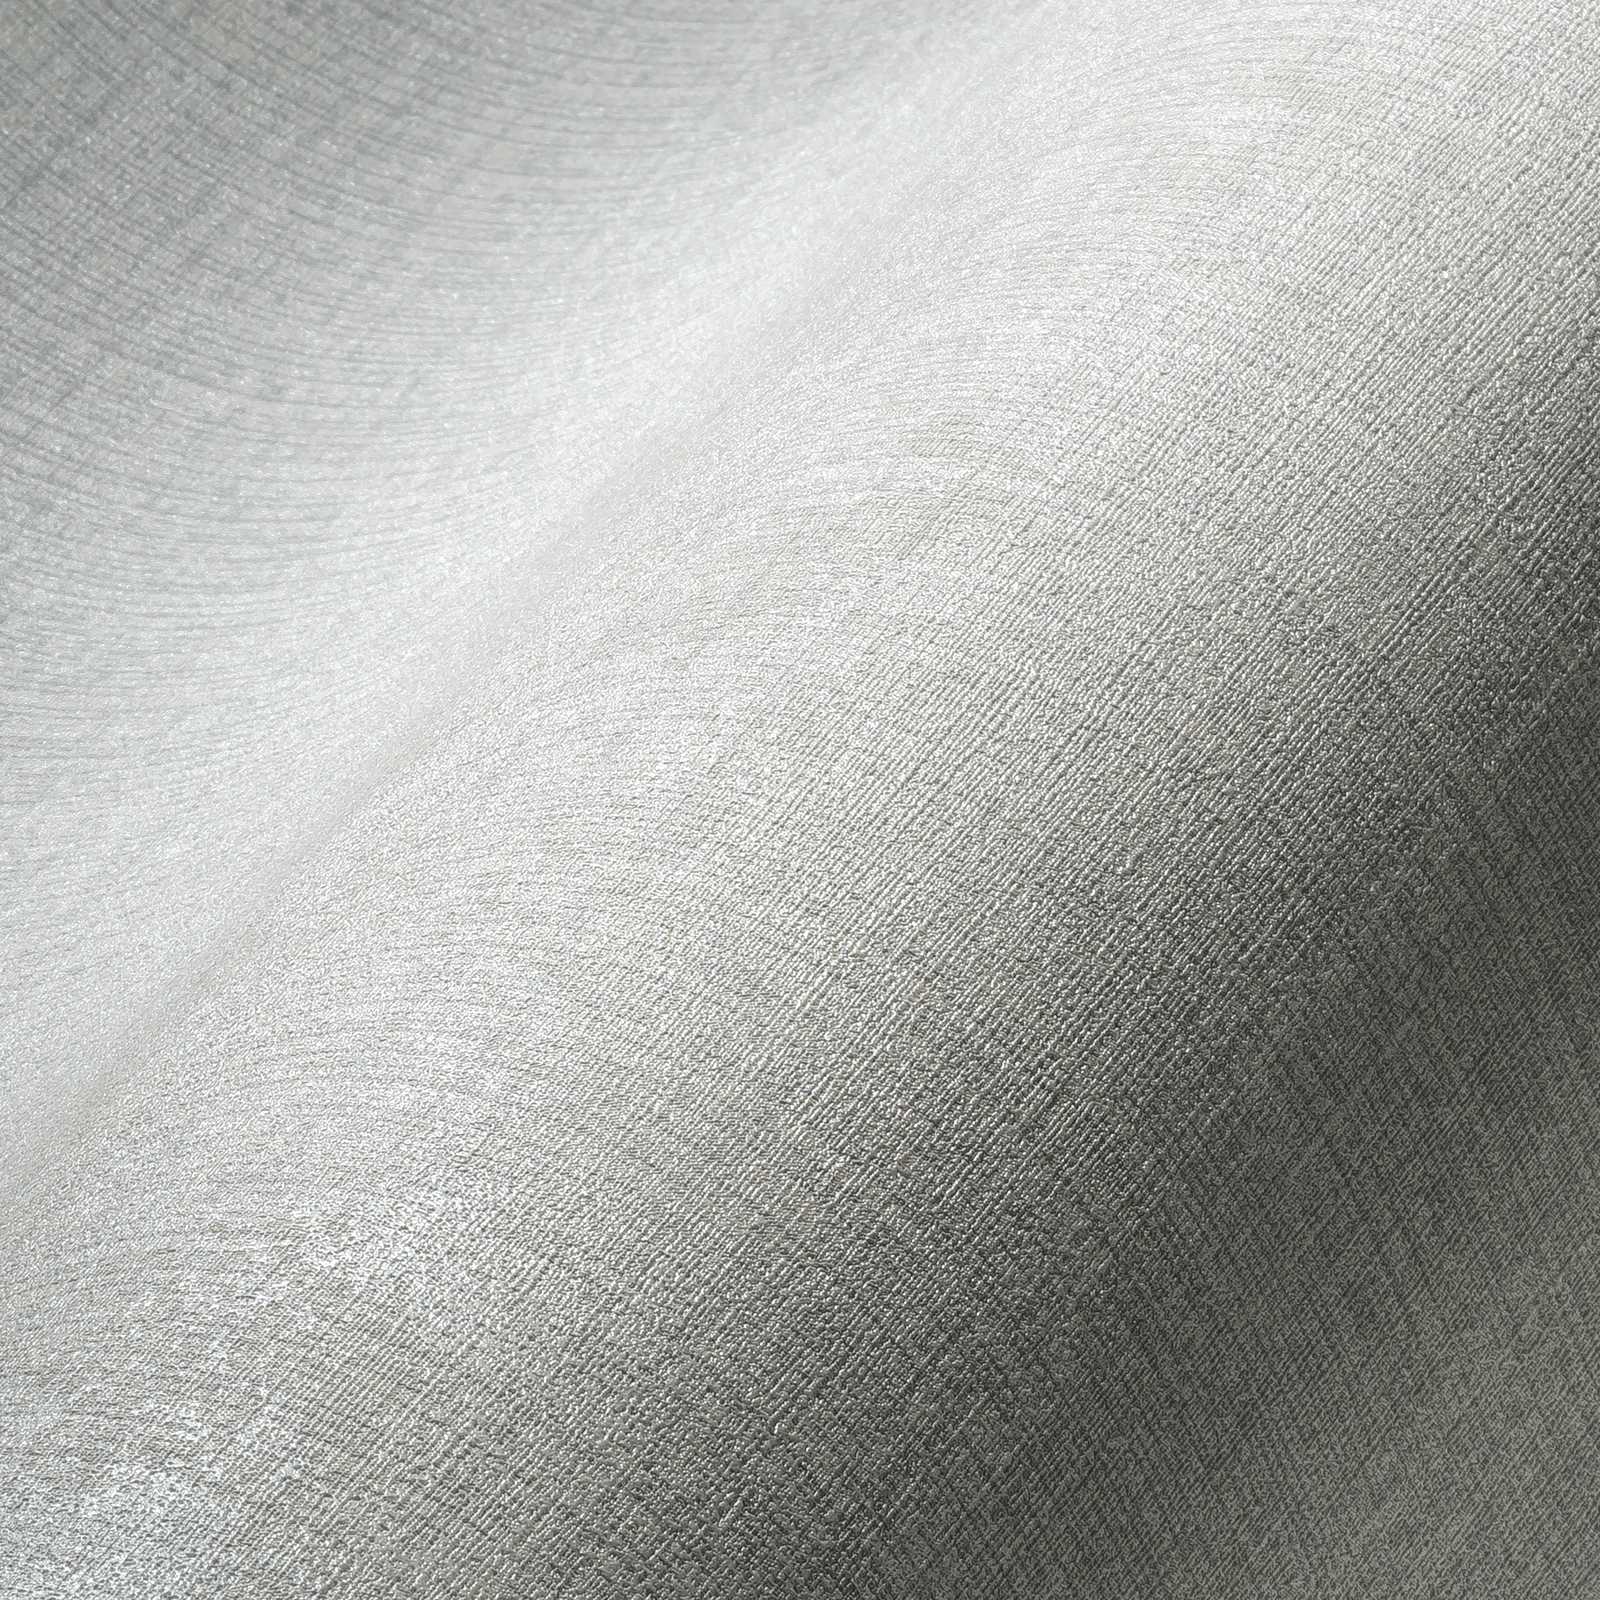             Wit behangvlies met canvasstructuur - wit, metallic
        